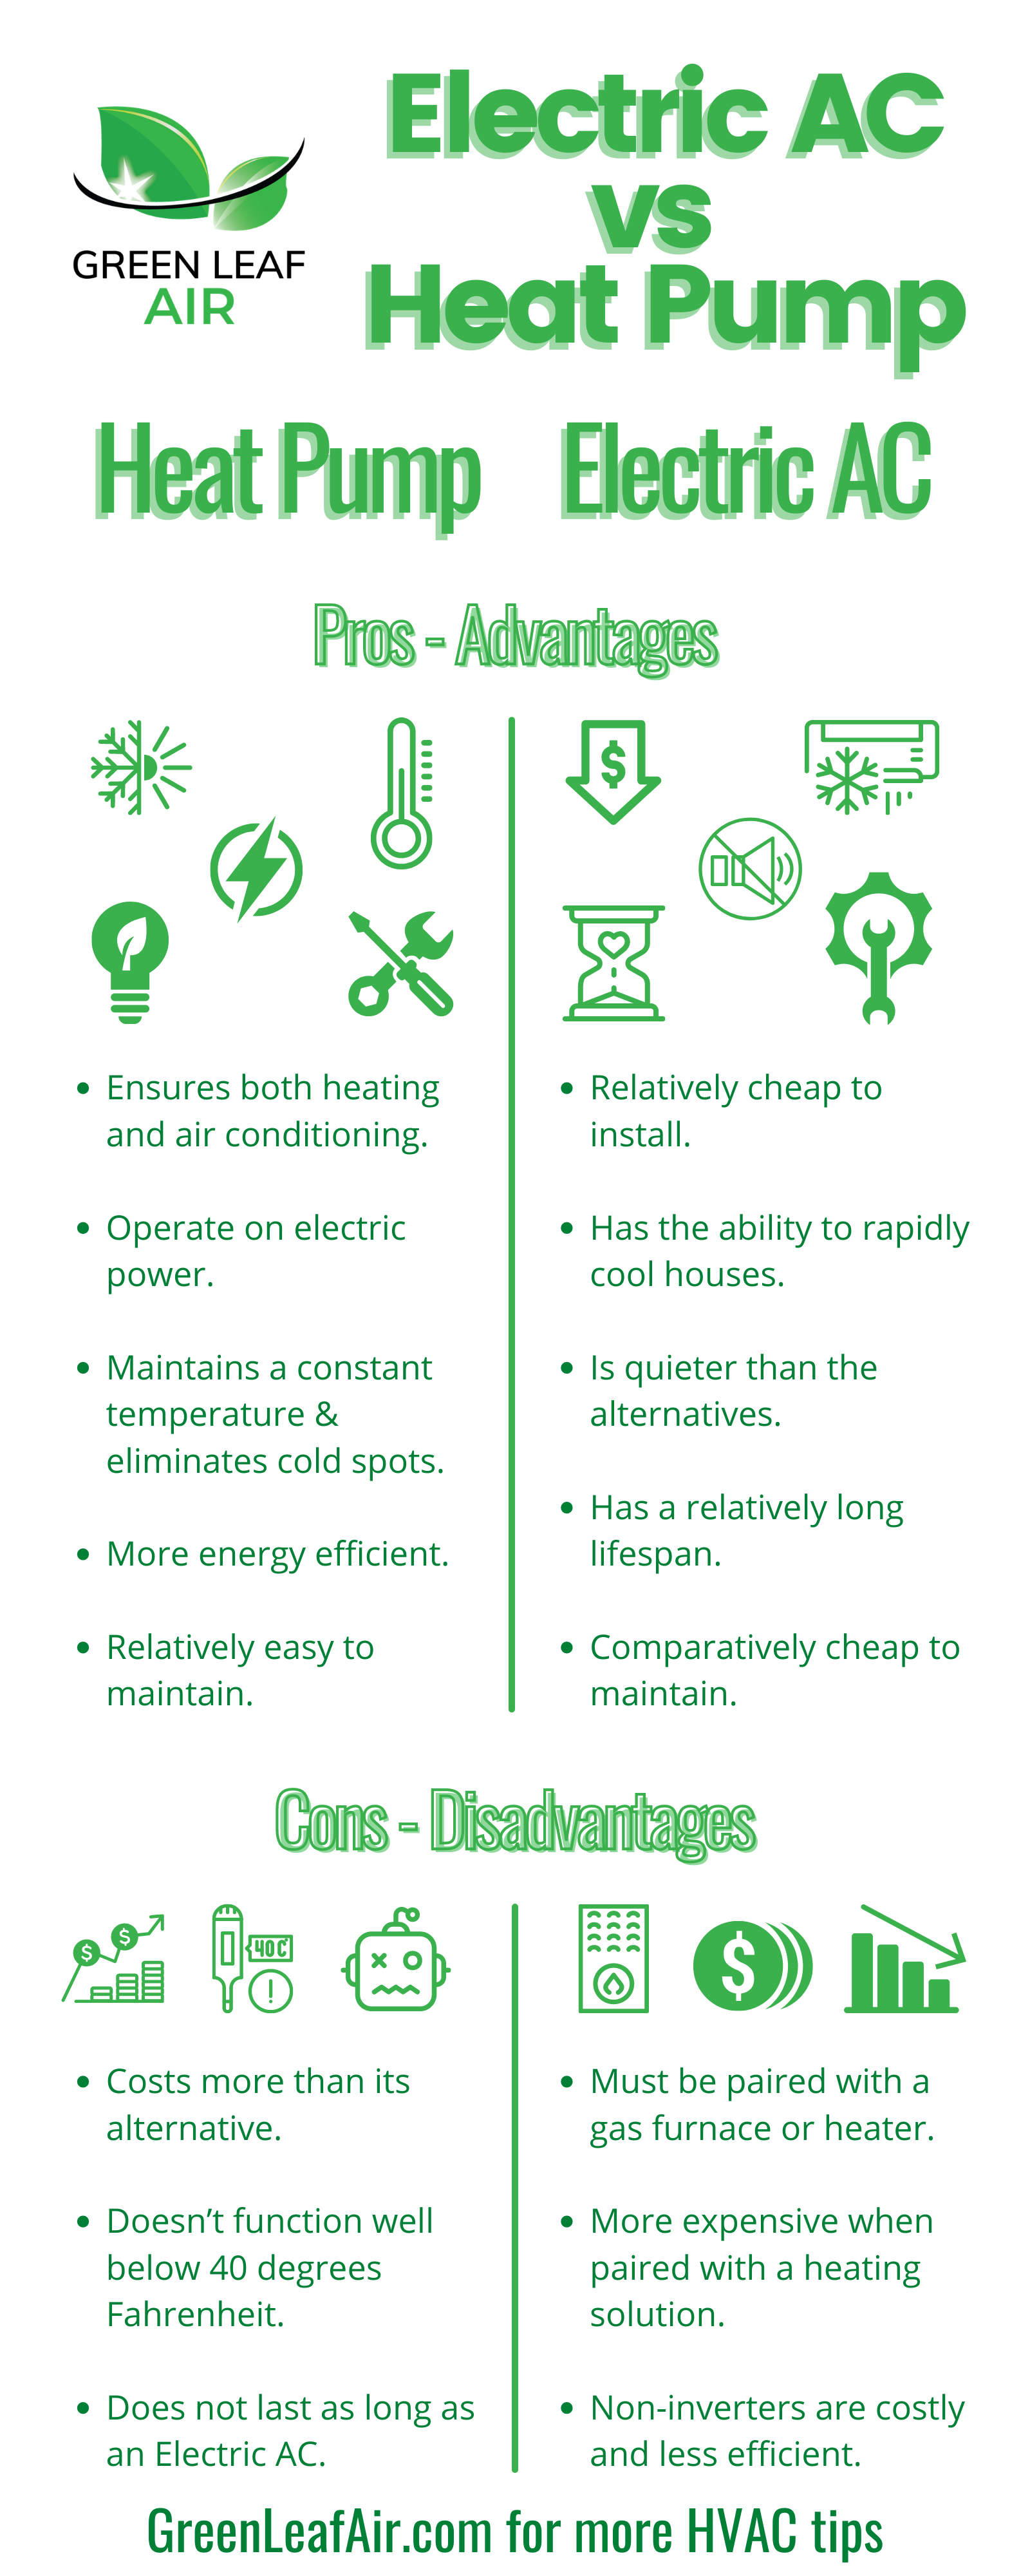 Electric AC vs Heat Pump